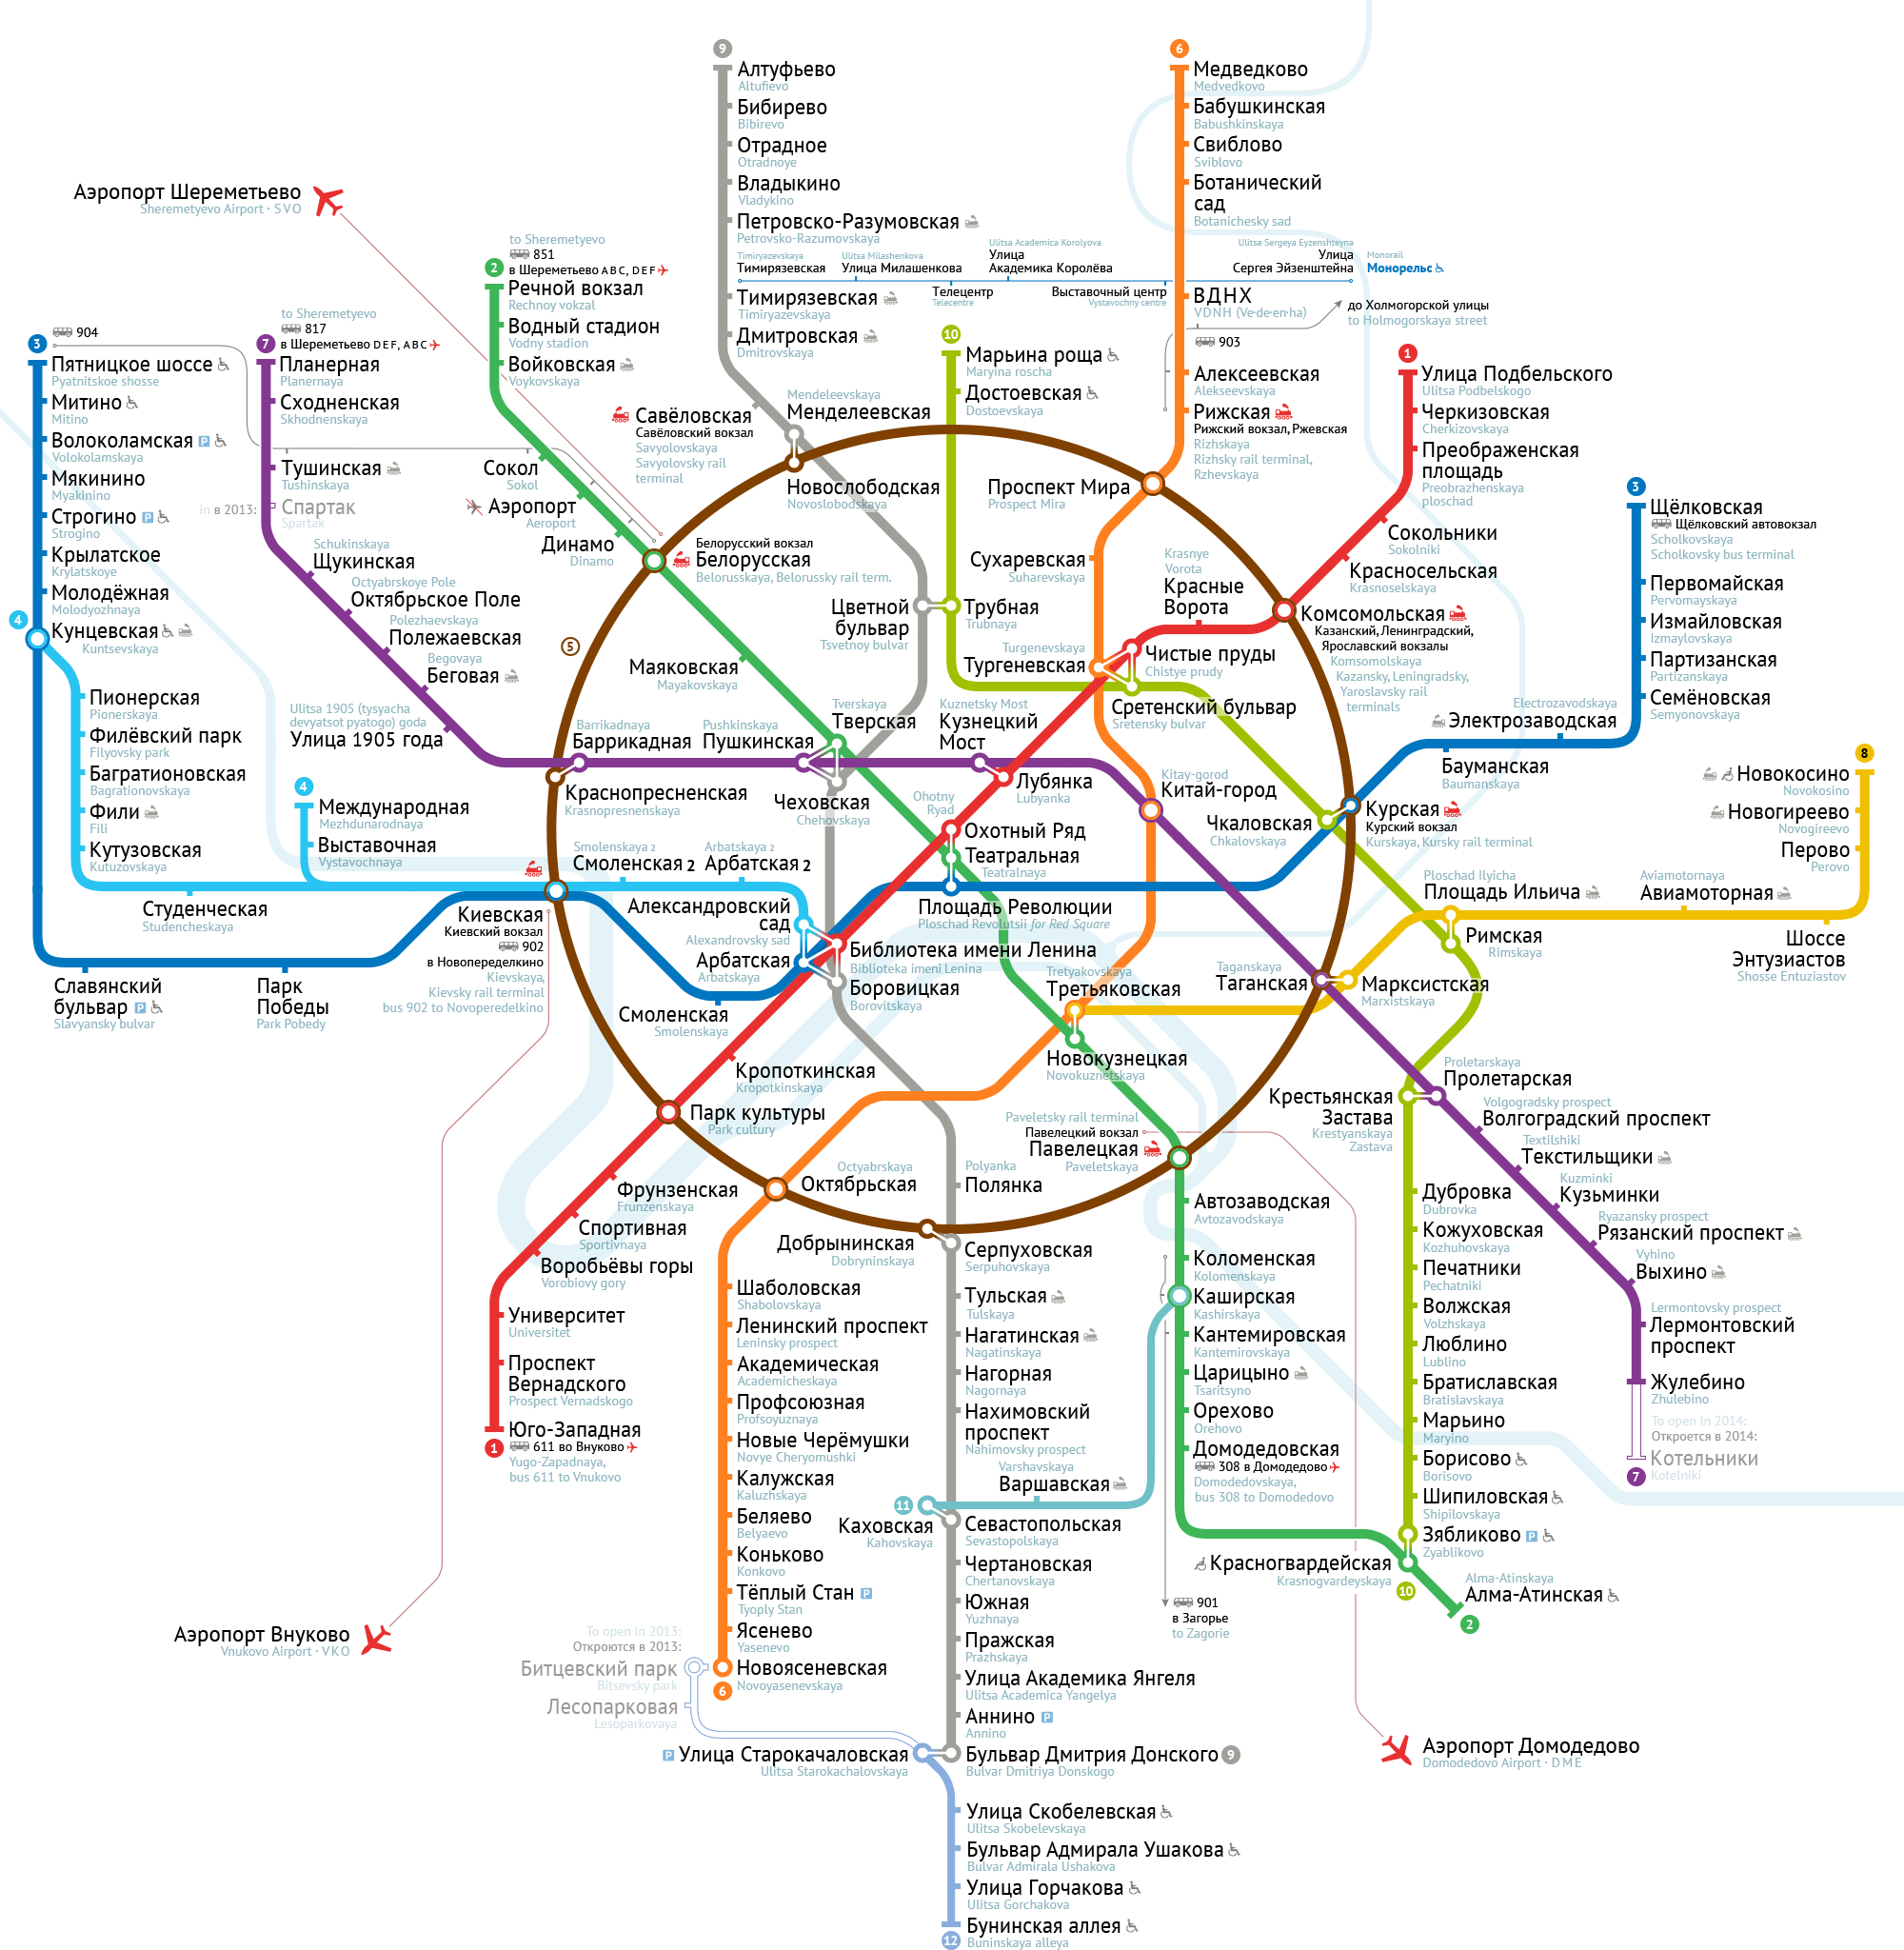 Лучшая схема метро Москвы